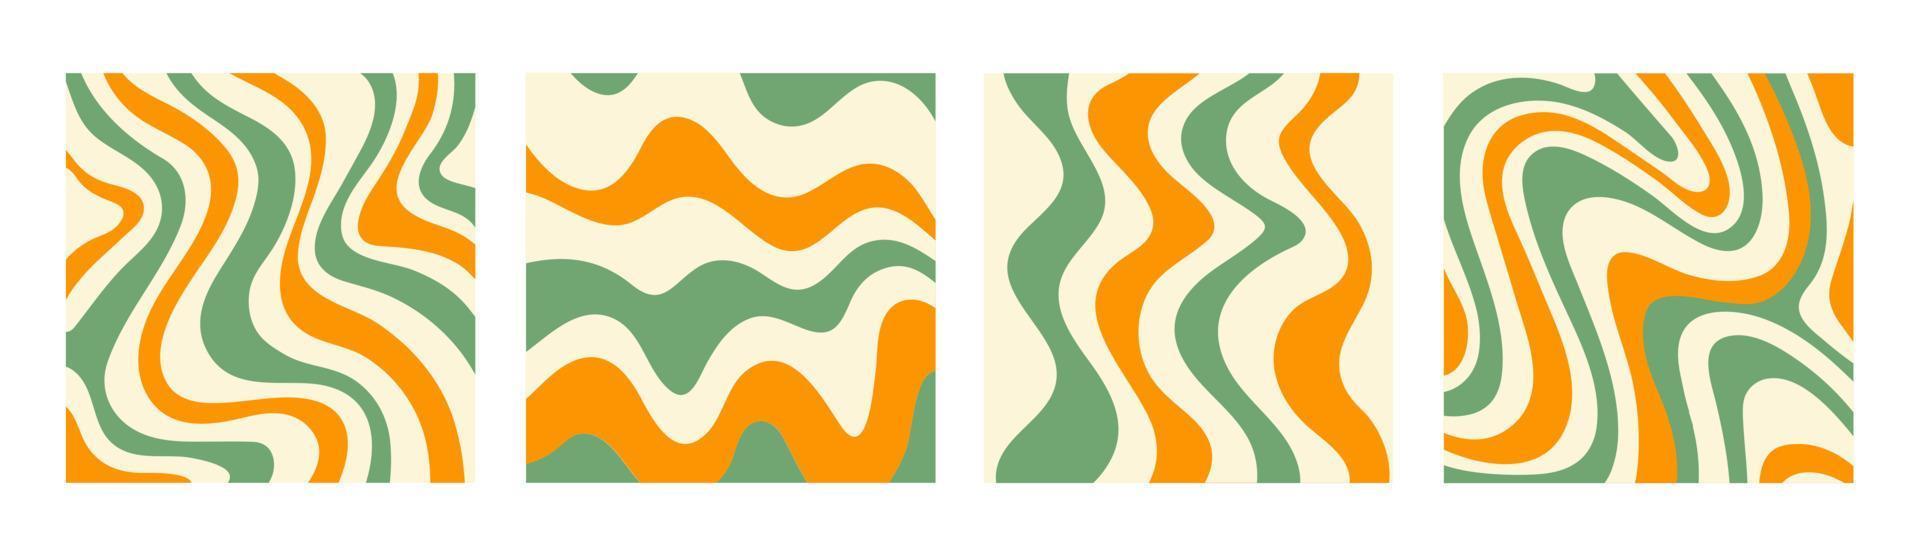 abstracte set vierkante achtergronden met kleurrijke golven. trendy vectorillustratie in stijl retro 60s, 70s. groene, gele en beige kleuren vector